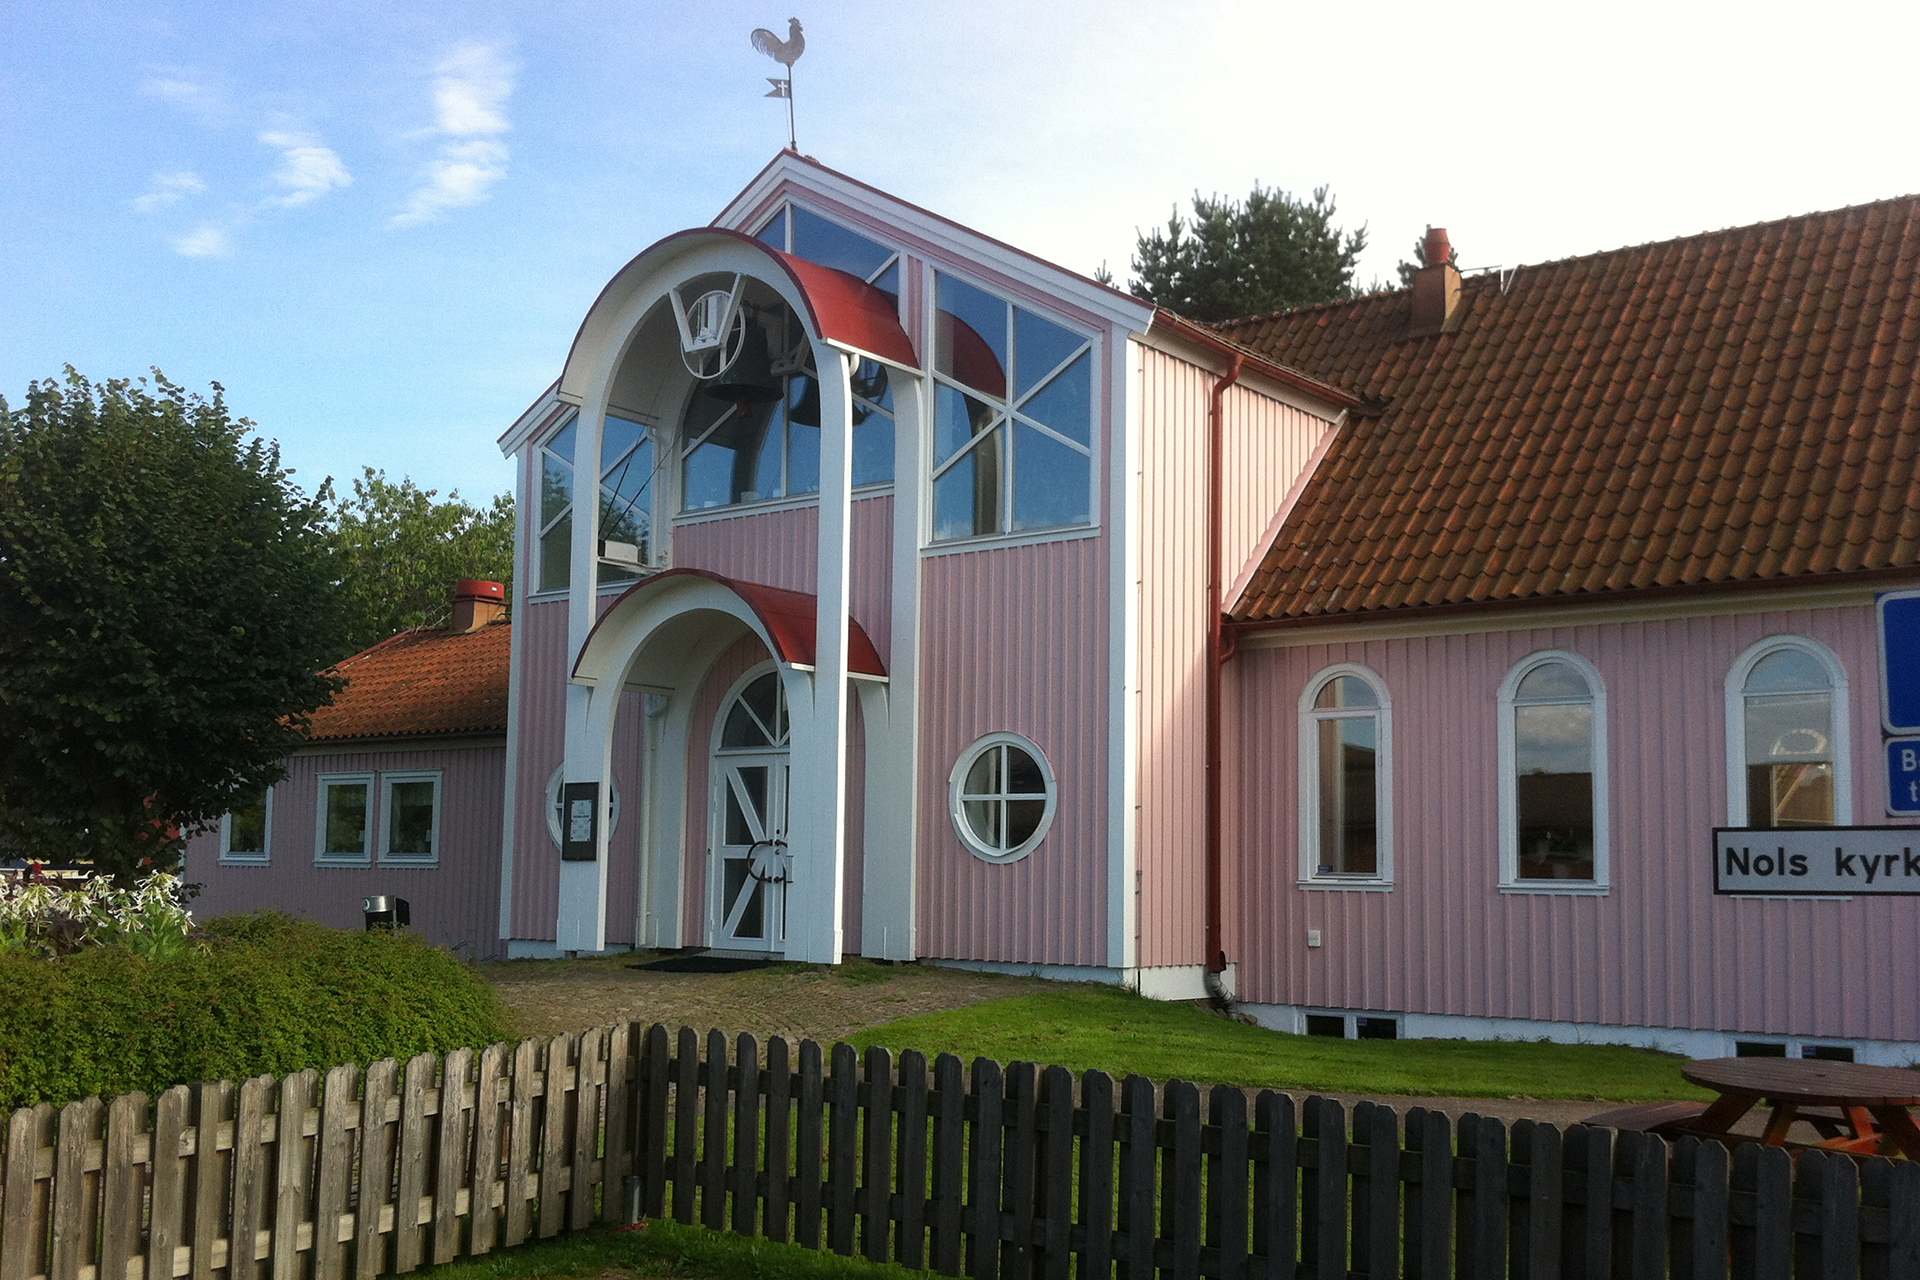 Nols kyrka